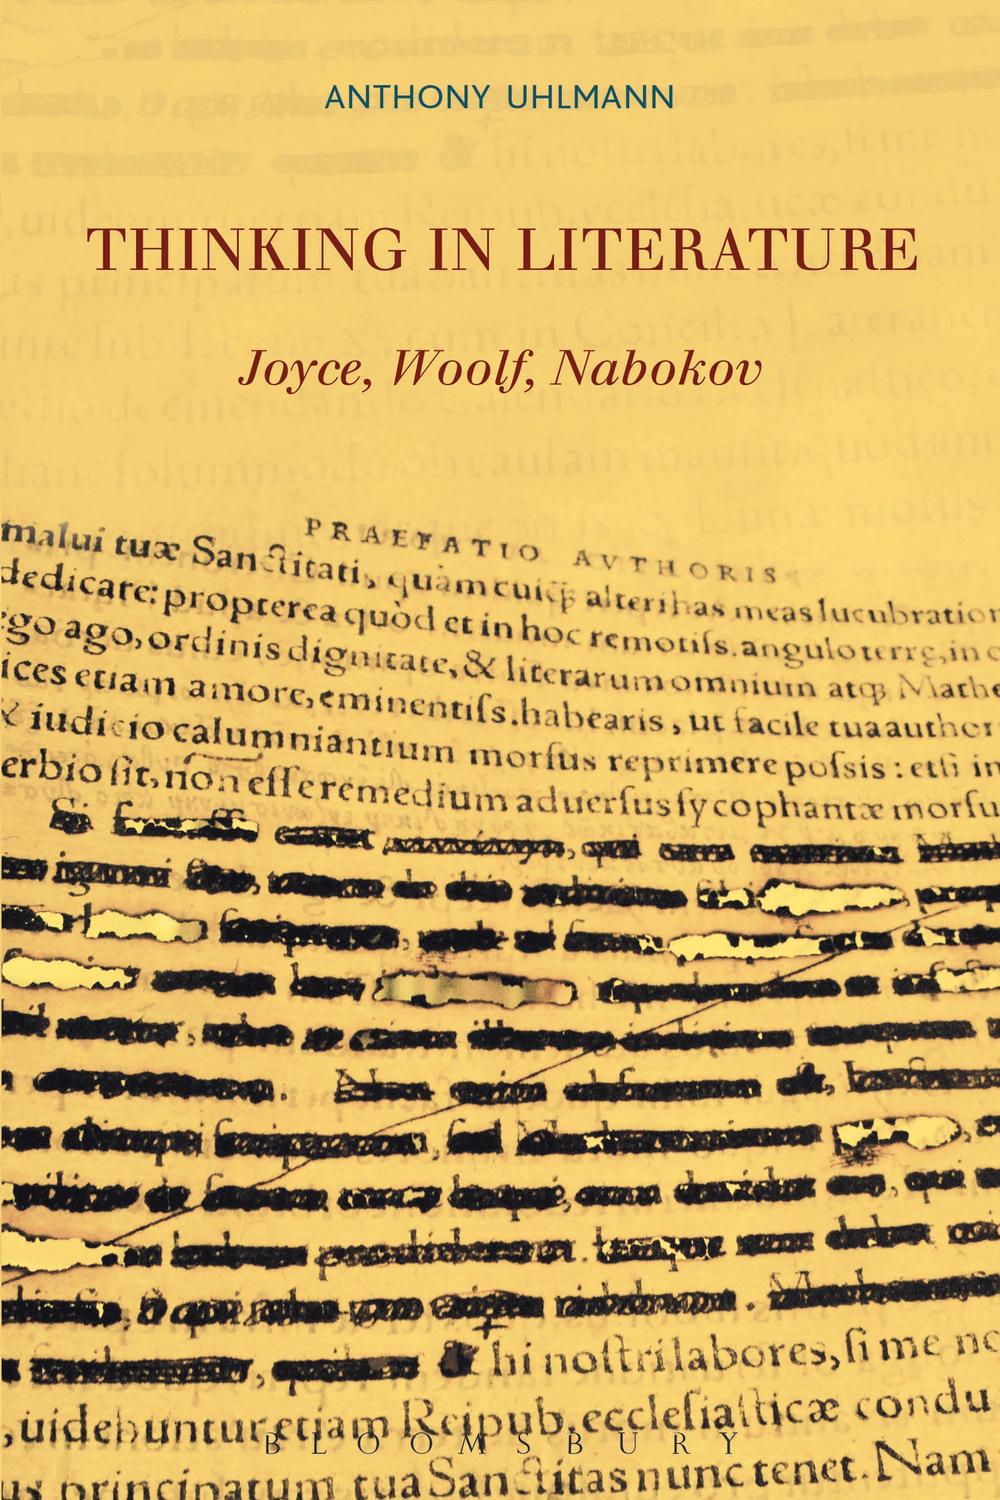 Thinking in Literature: Joyce, Woolf, Nabokov - Anthony Uhlmann